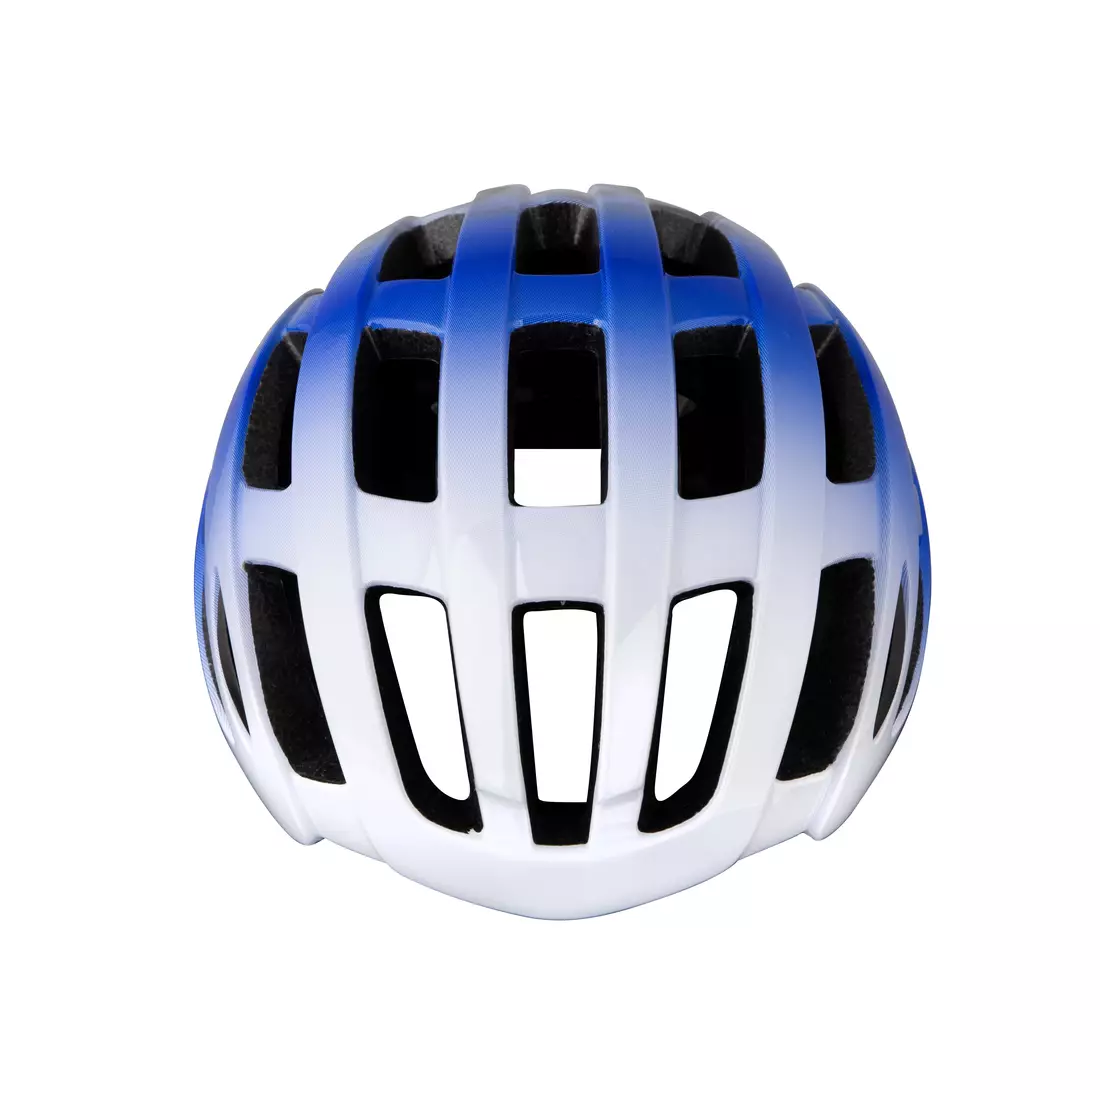 FORCE silniční cyklistická helma HAWK white/blue 902770